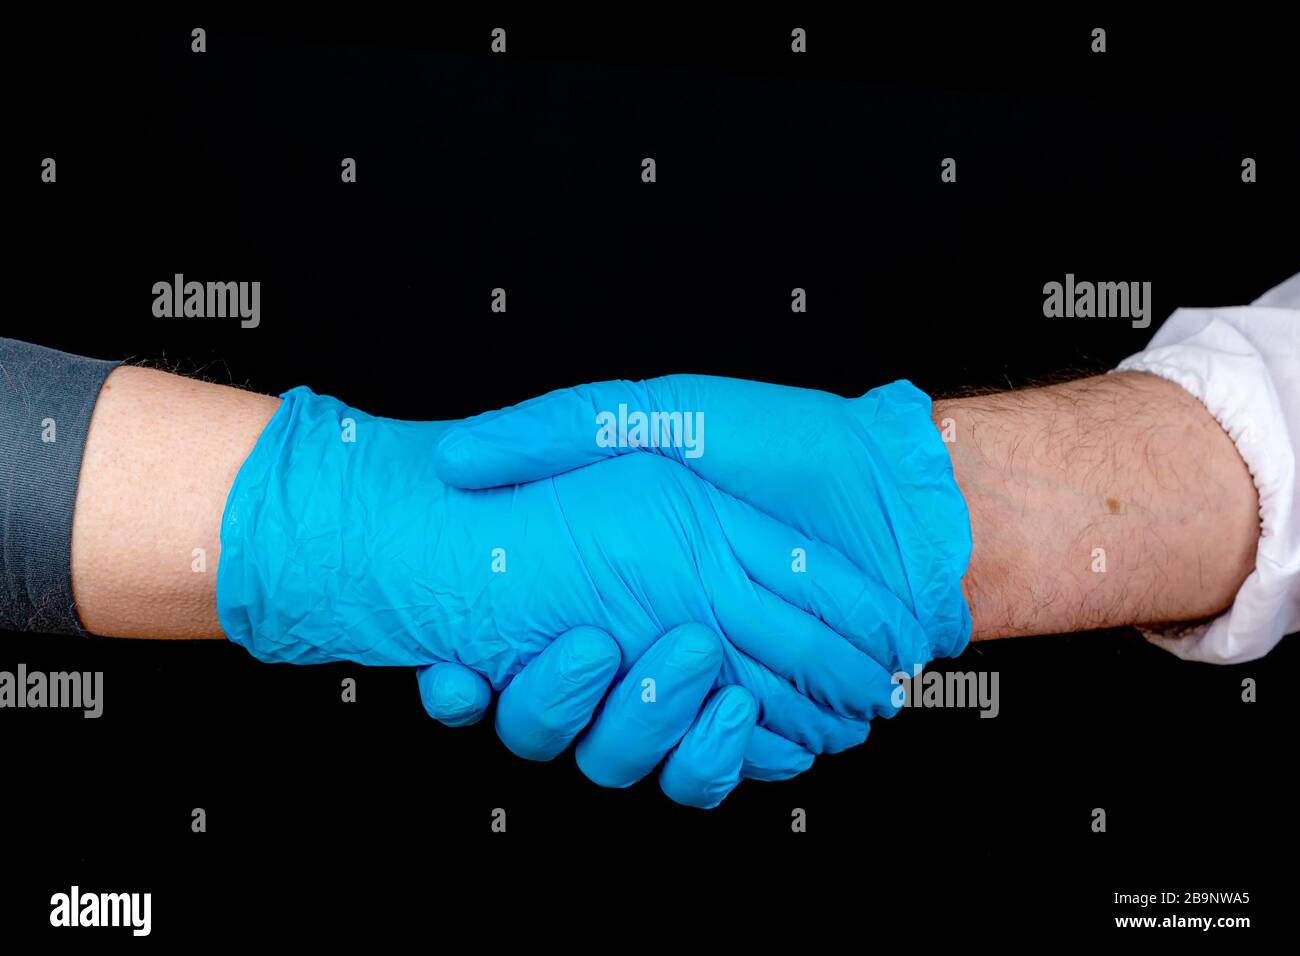 Schüttelnde Hände, zwei Personen, die blaue Latexhandschuhe tragen, schütteln die Hände. Nur Hände sichtbar. Nahansicht, schwarzer Hintergrund. Stockfoto